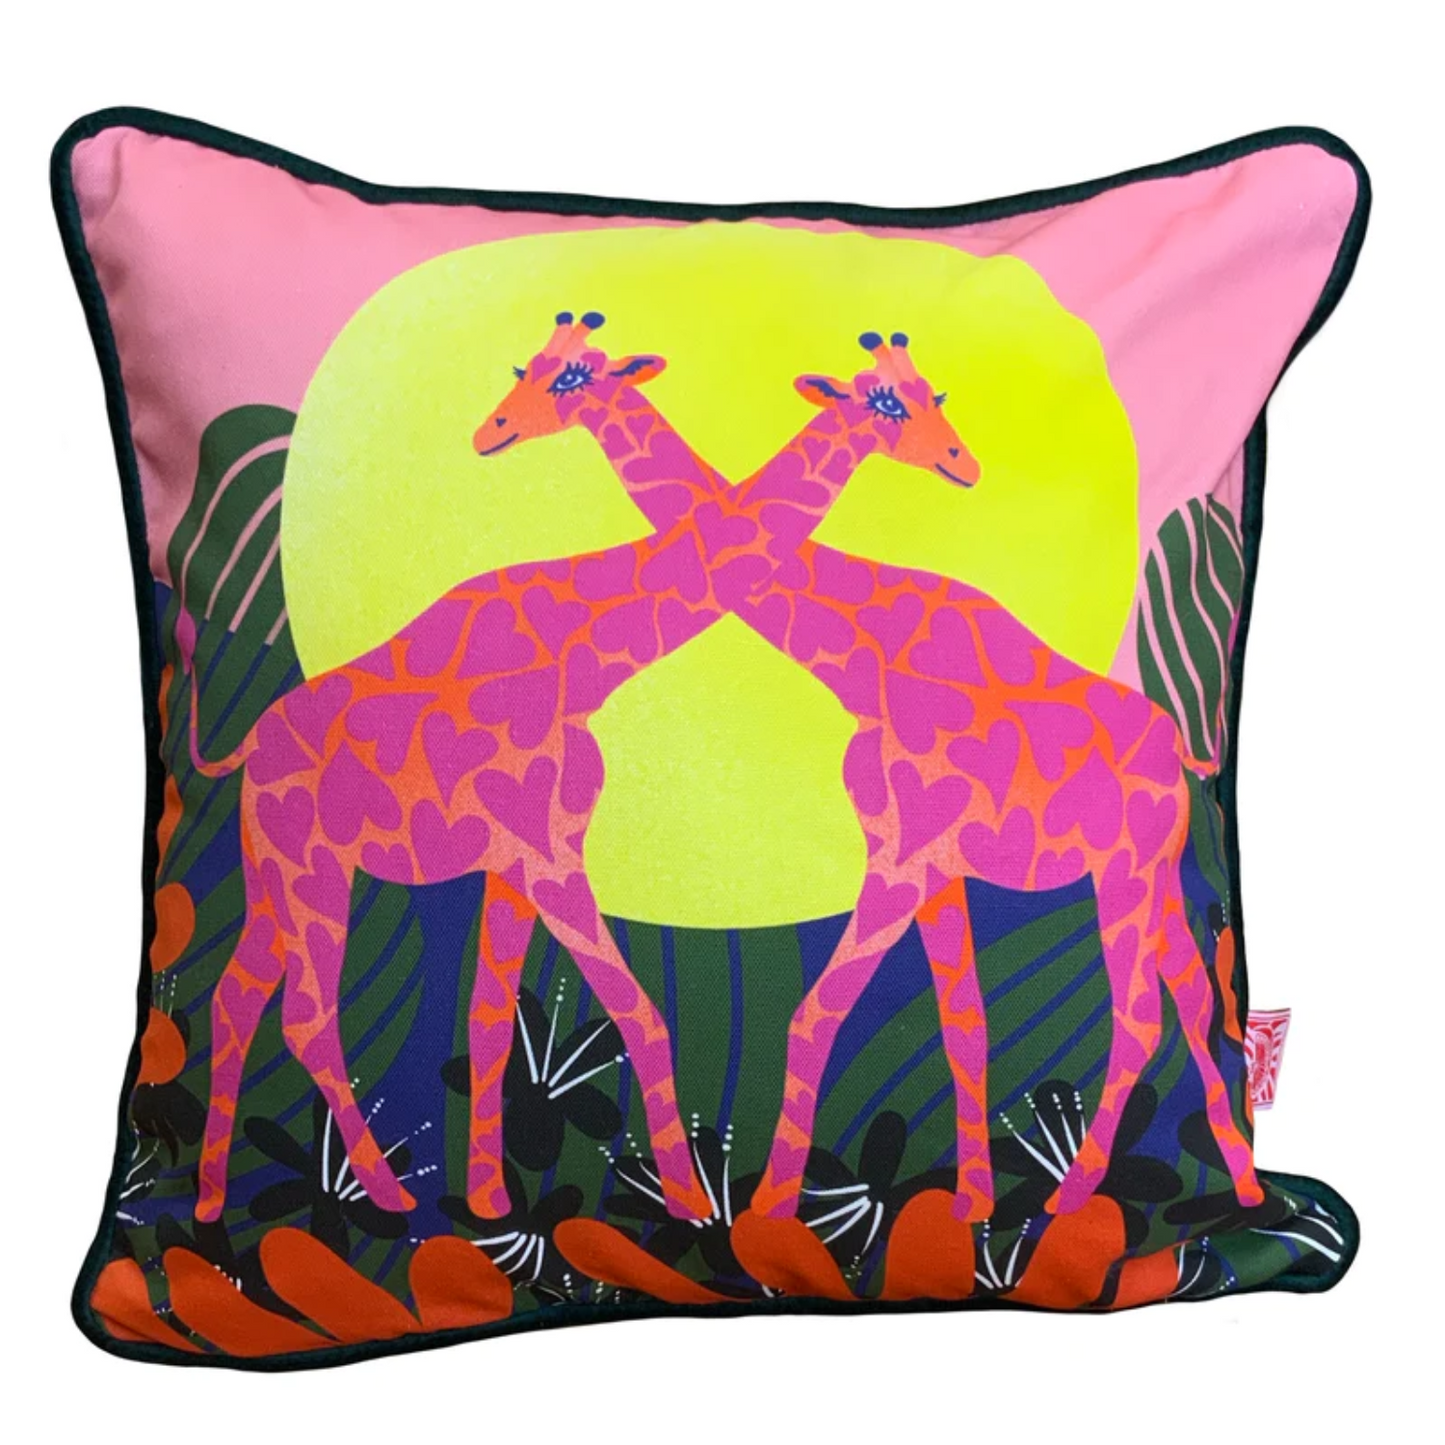 Loving Giraffes Throw Pillow Cover